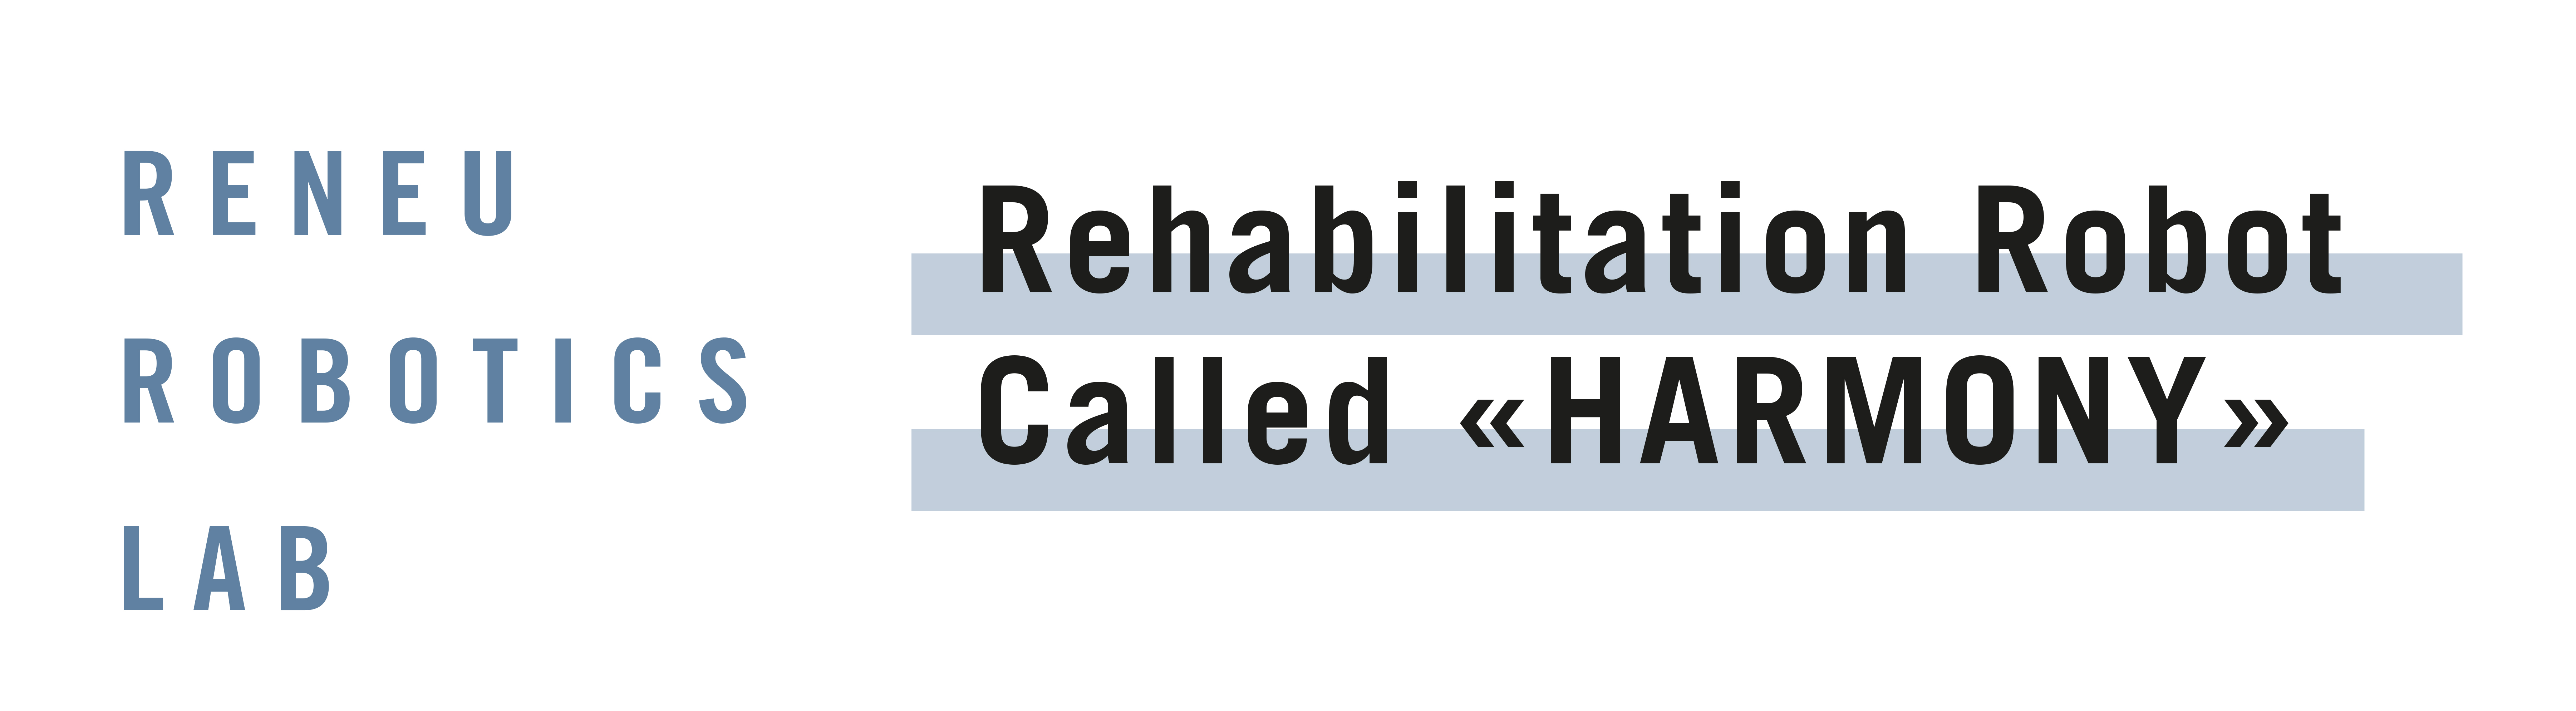 Rehabilitation Robot called »HARMONY »